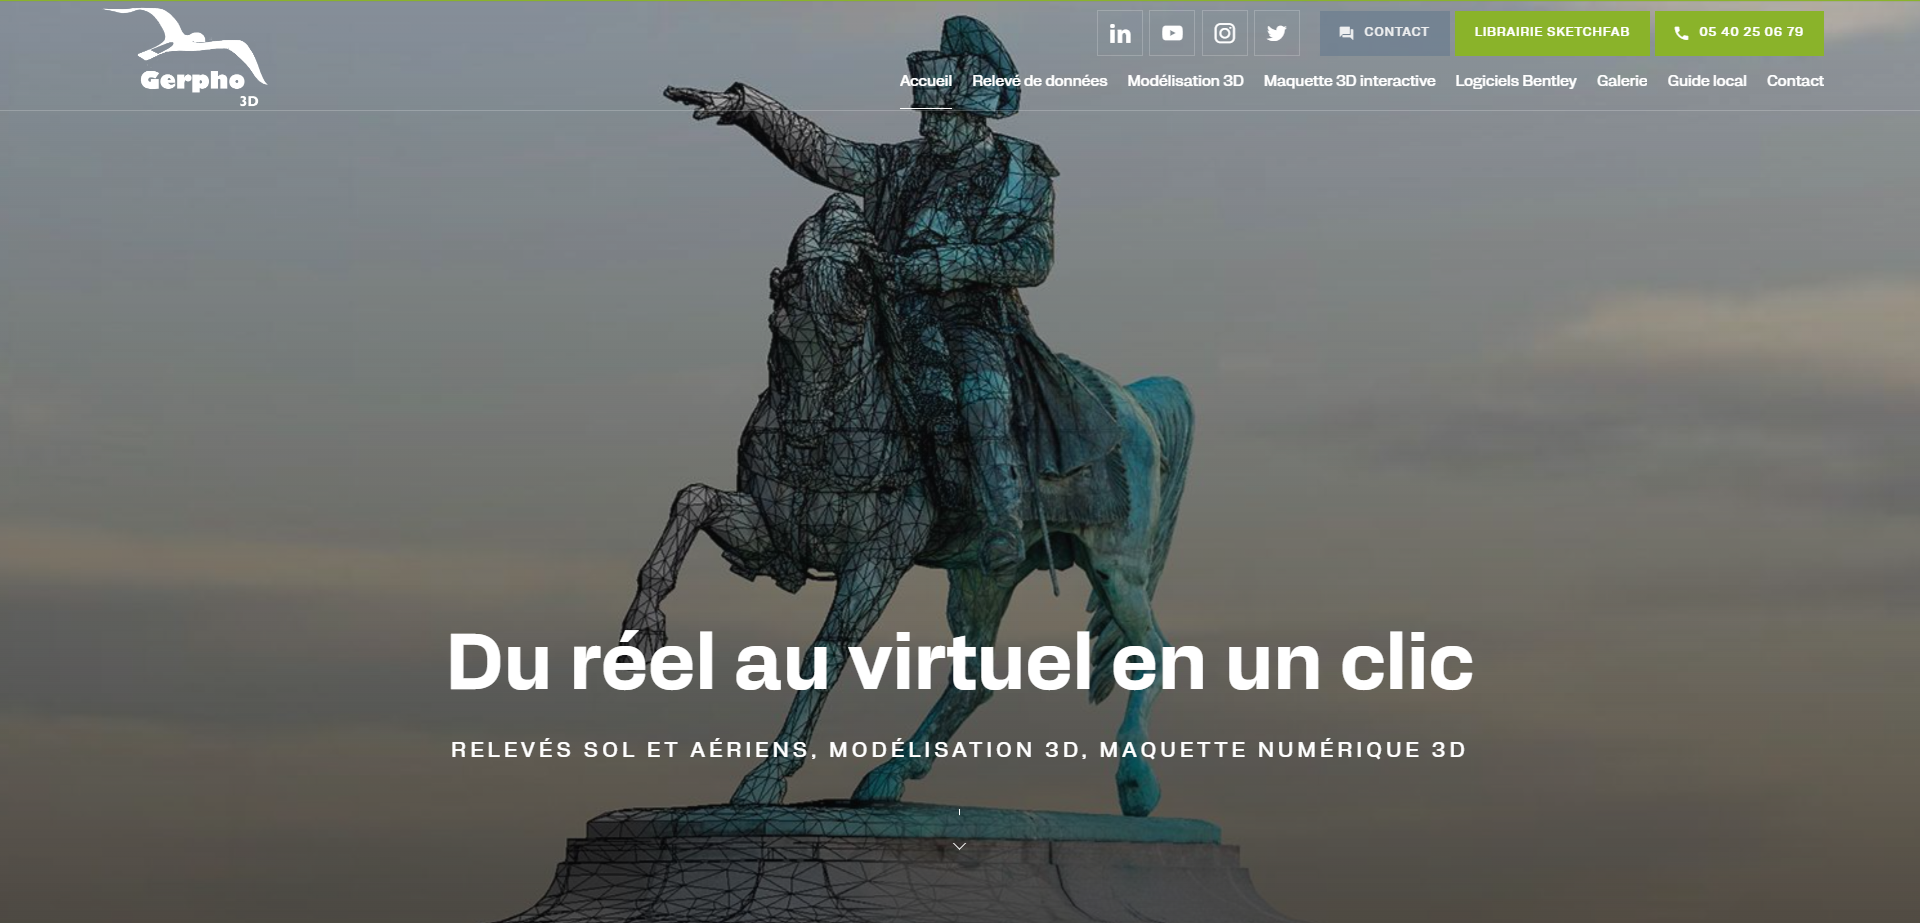 Création d’un site internet pour Gerpho 3D, spécialiste de la modélisation 3D à Gradignan 